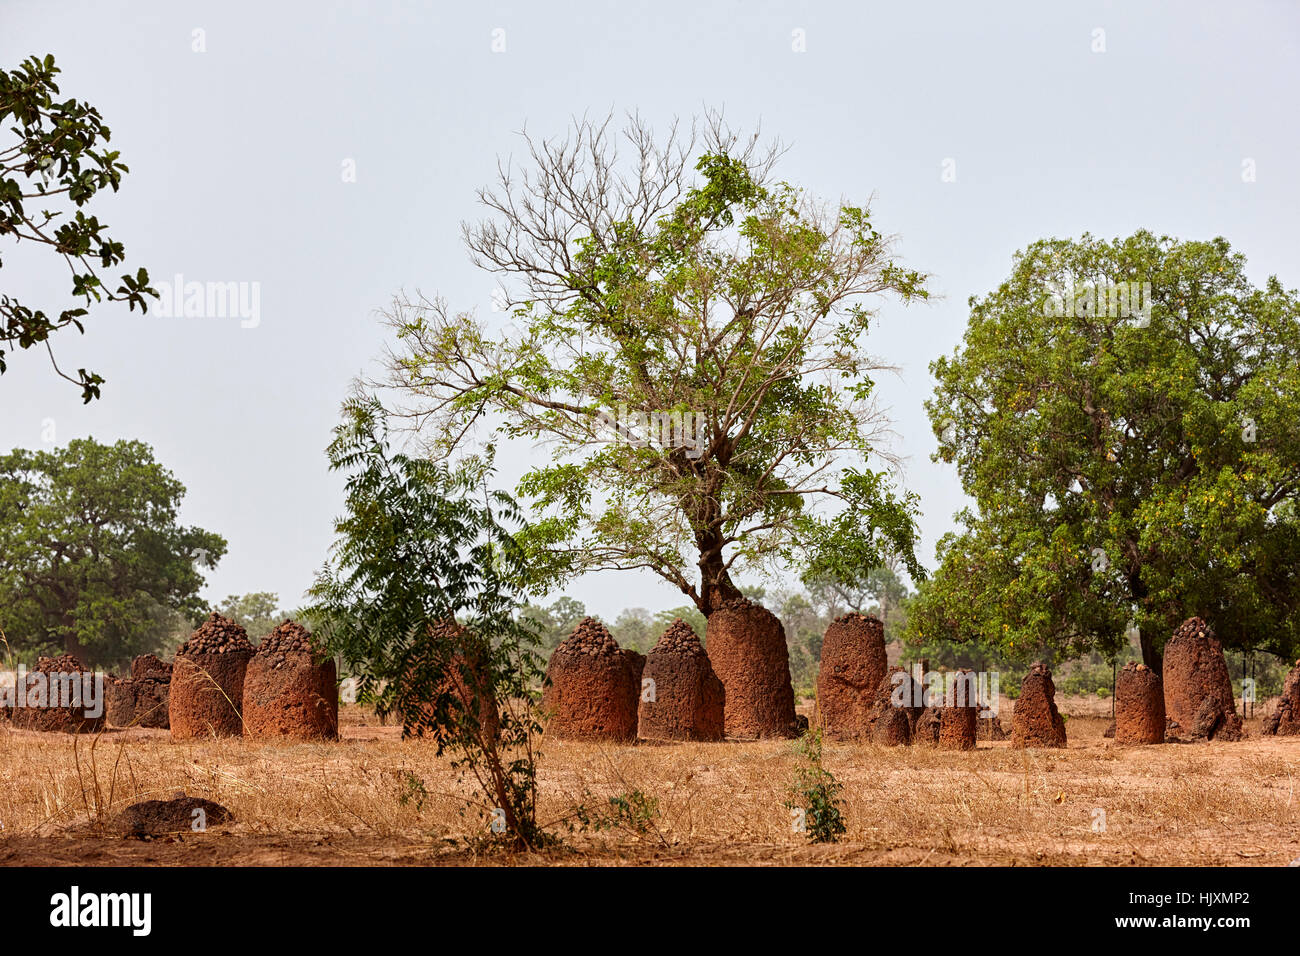 Círculos de piedra Wassu, Sitio del Patrimonio Mundial de la UNESCO, Gambia, África Foto de stock